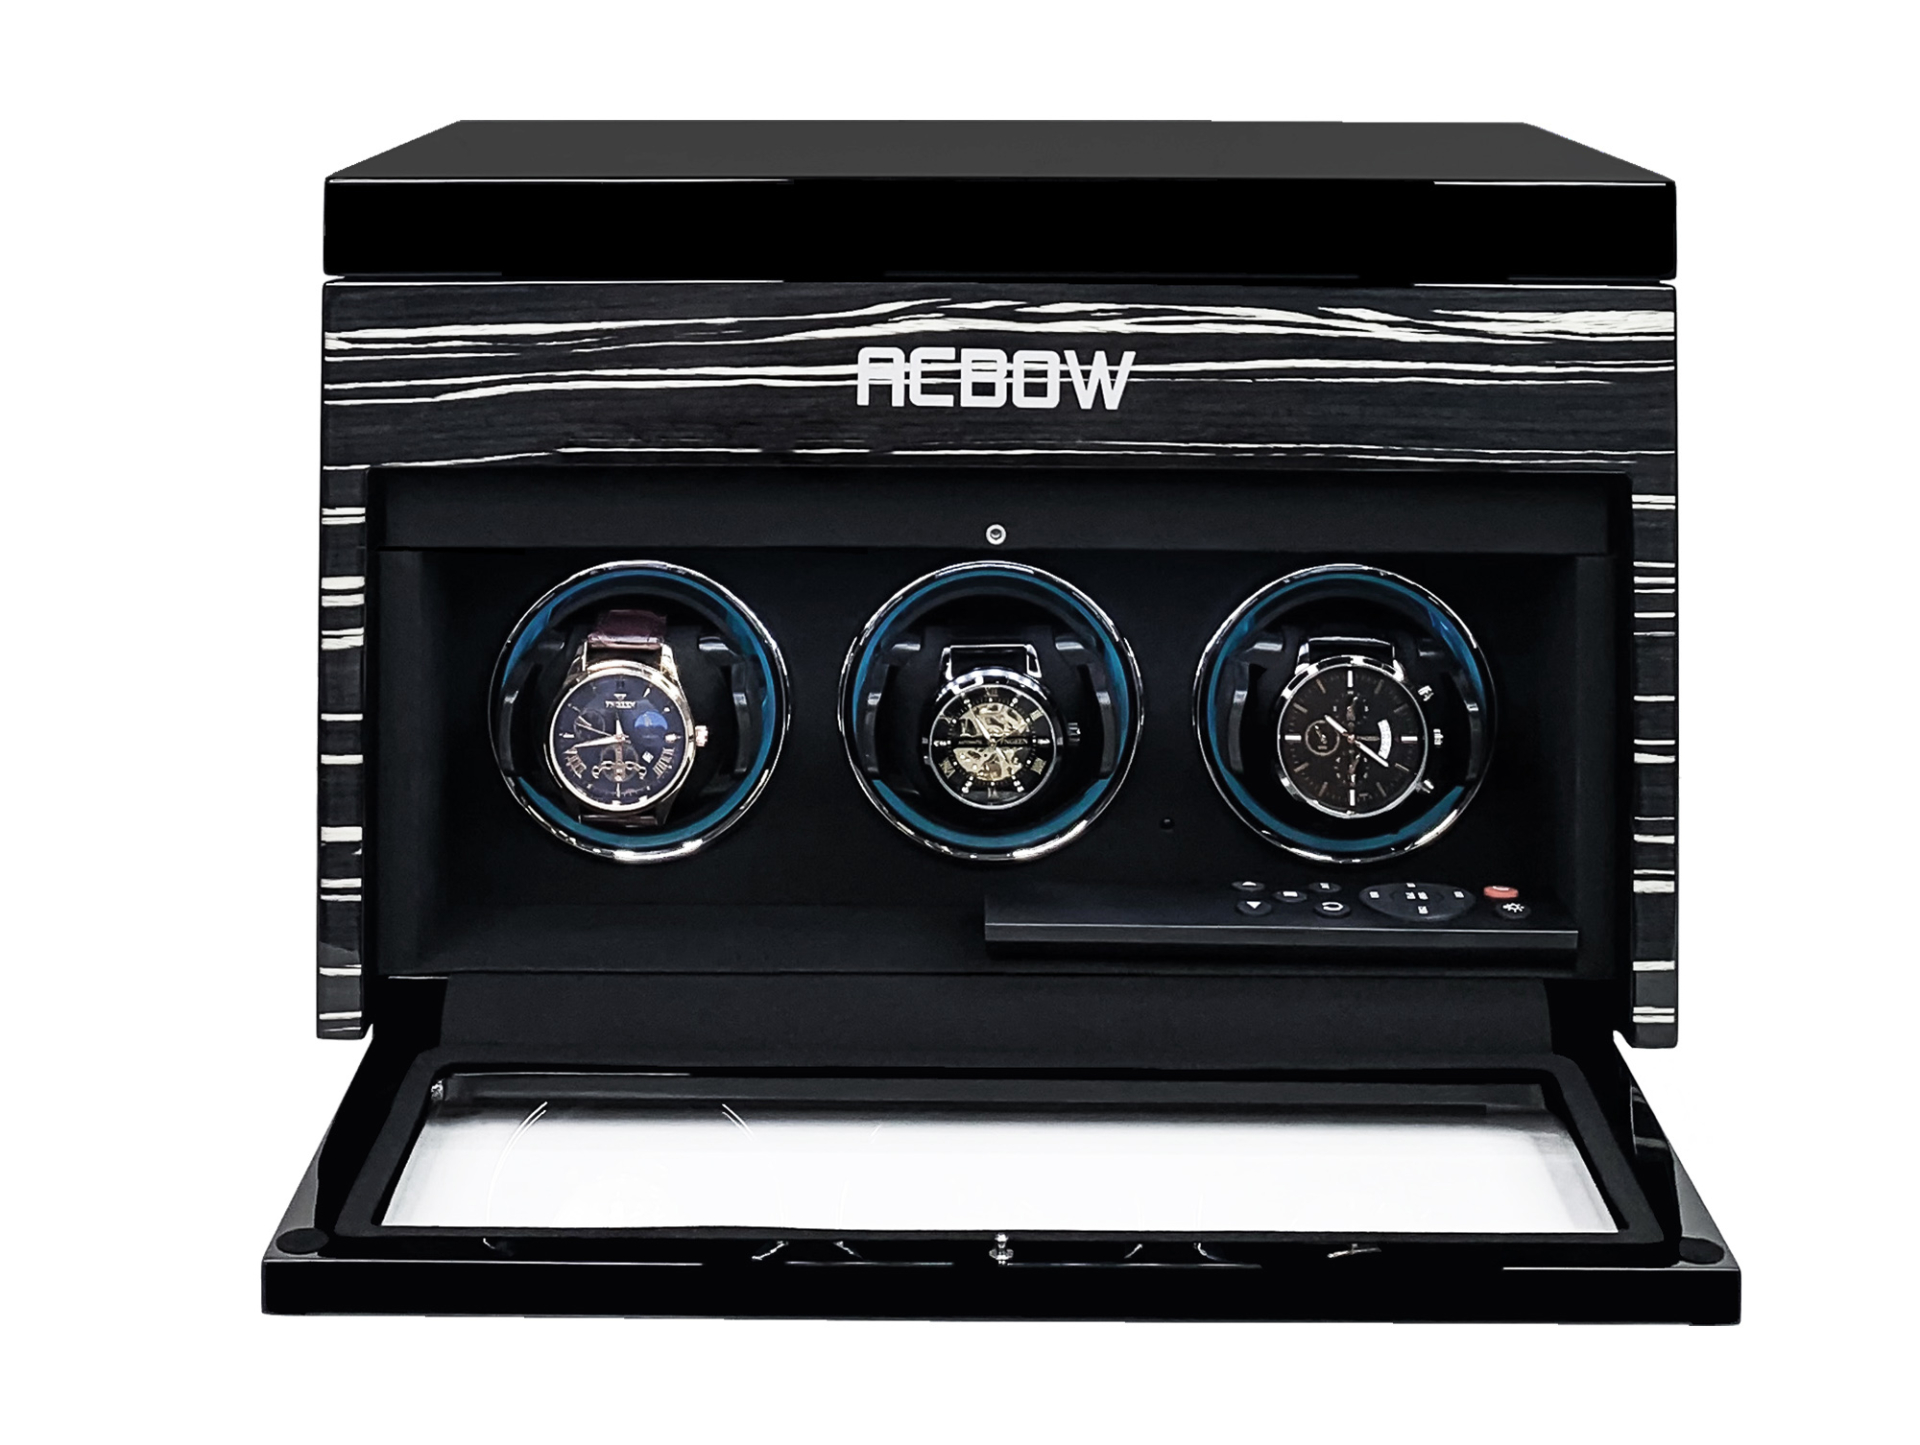 Tủ đựng đồng hồ cơ ACBOW cao cấp - 3 xoay 6 tĩnh - kèm remote, màn hình cảm ứng và LED - vỏ gỗ màu granite sáng bóng